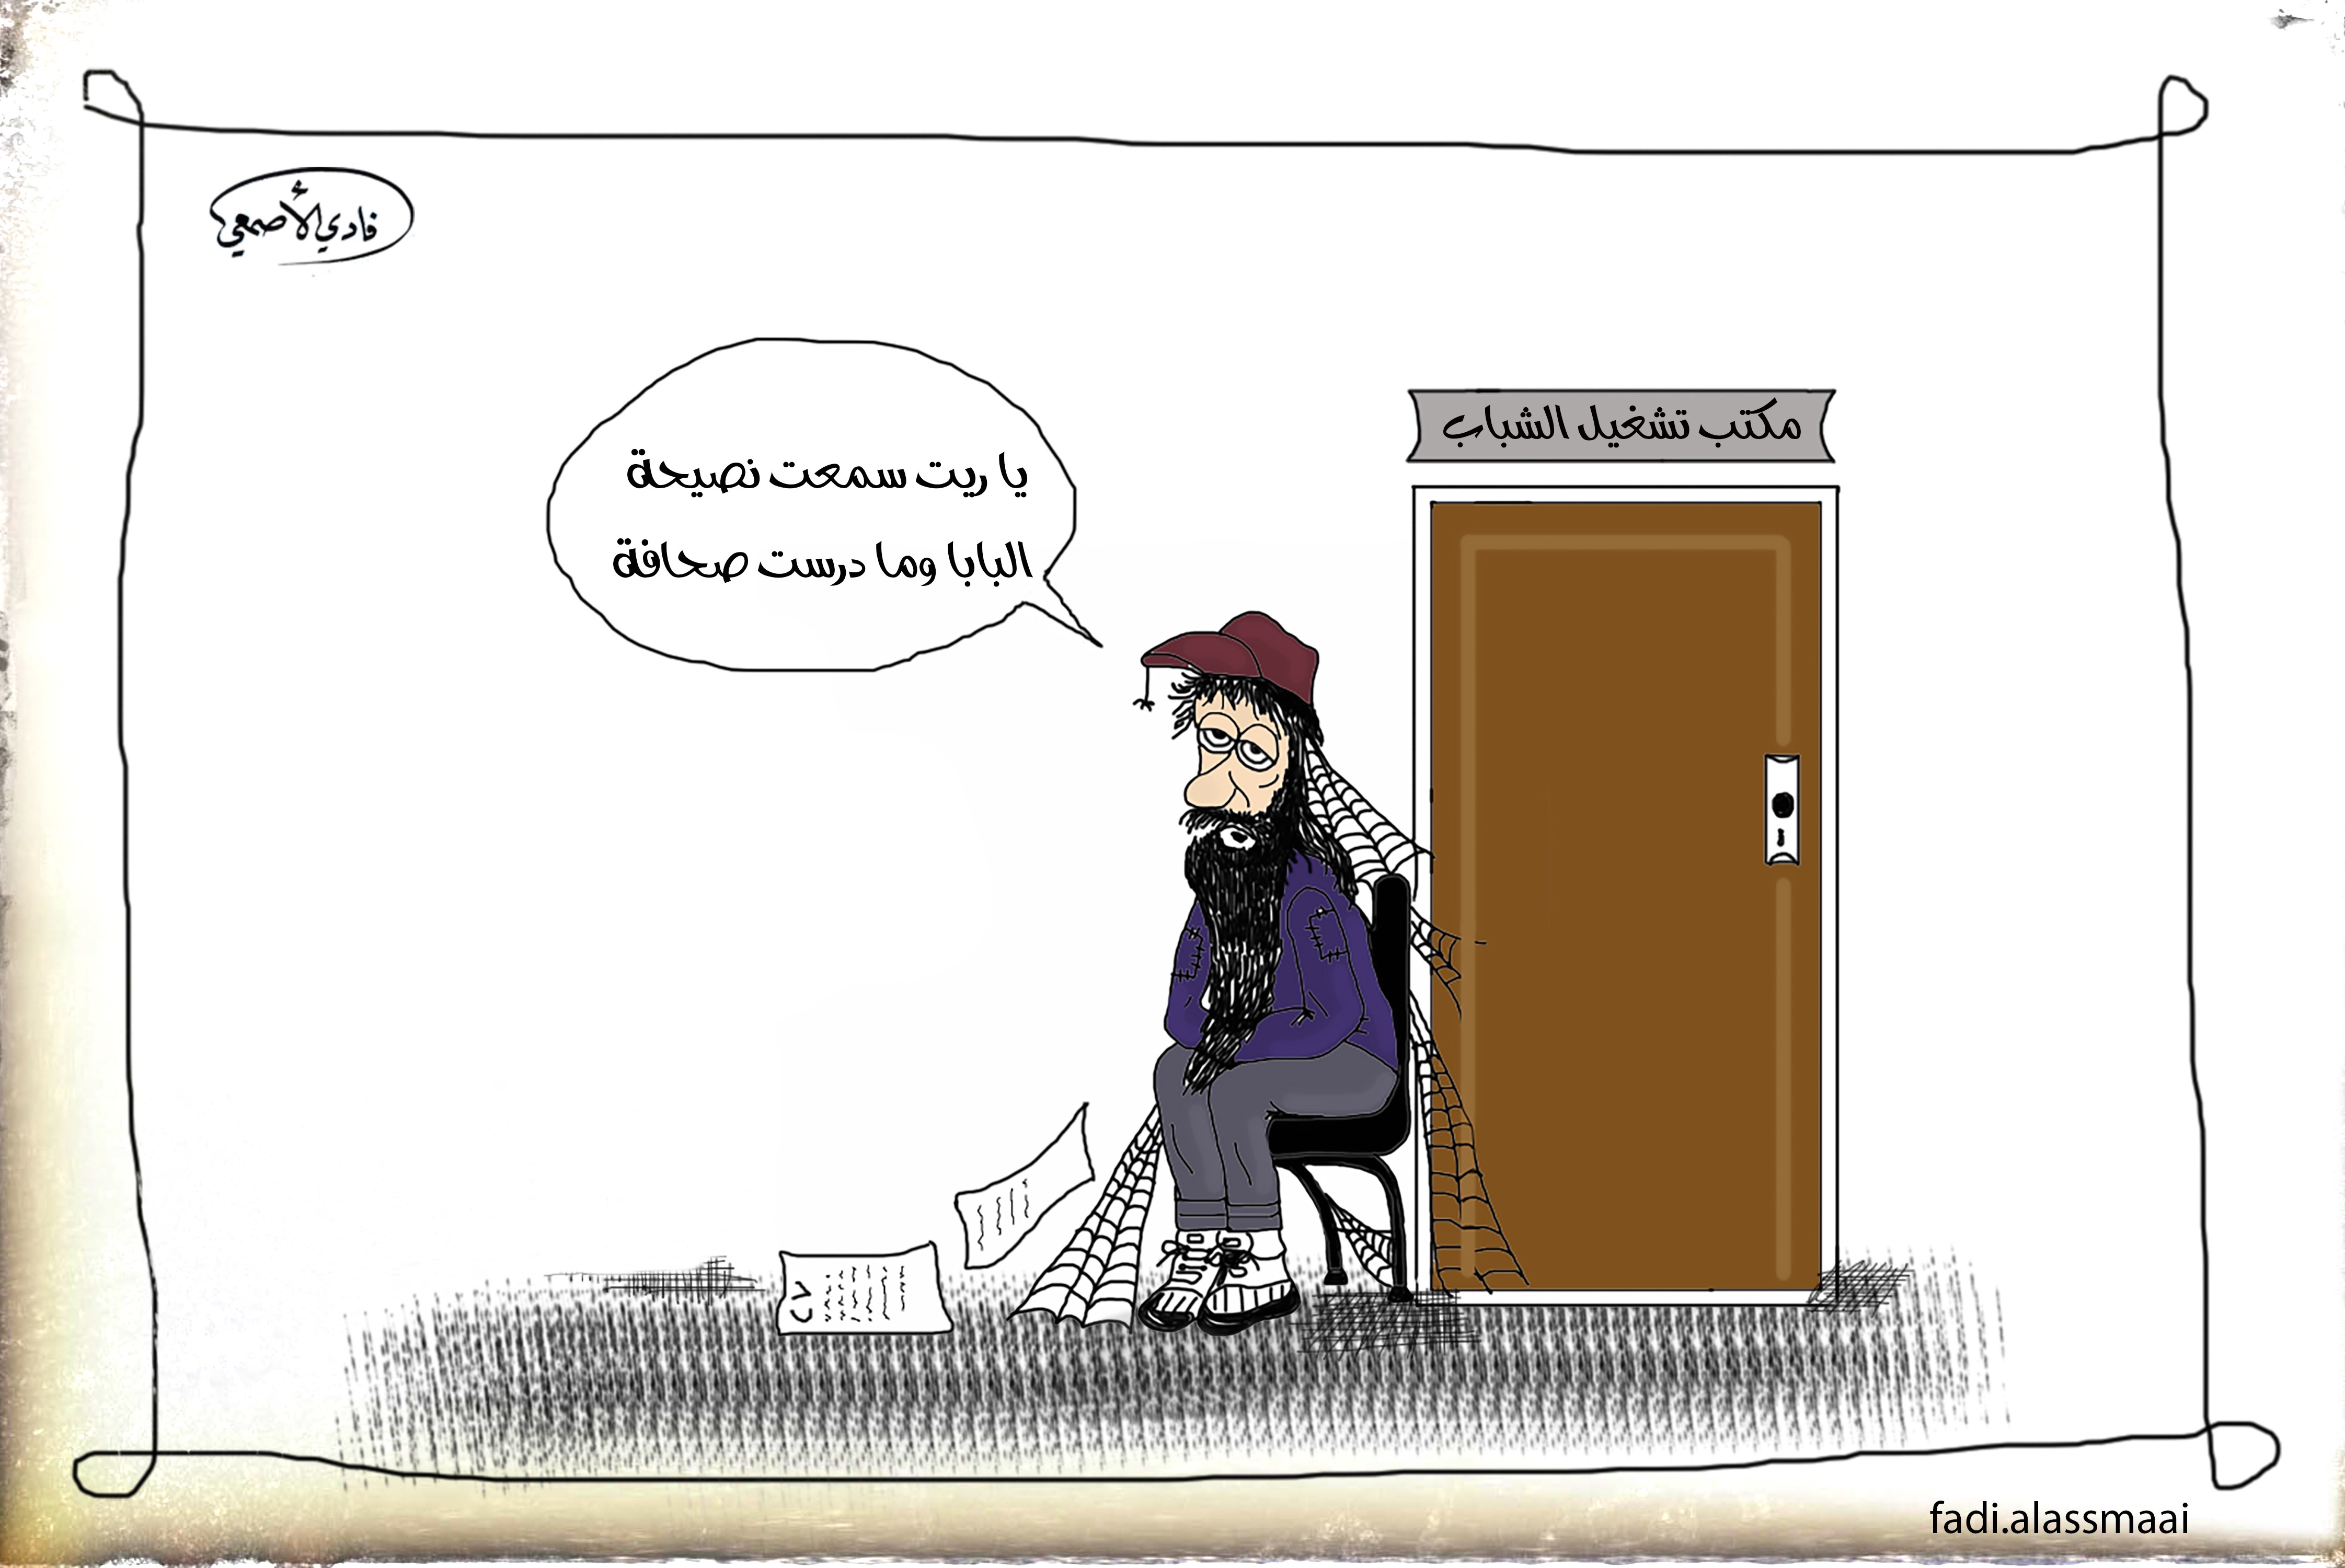 كريكاتير للصحفي فادي الأصمعي (خاص بالسوري اليوم)